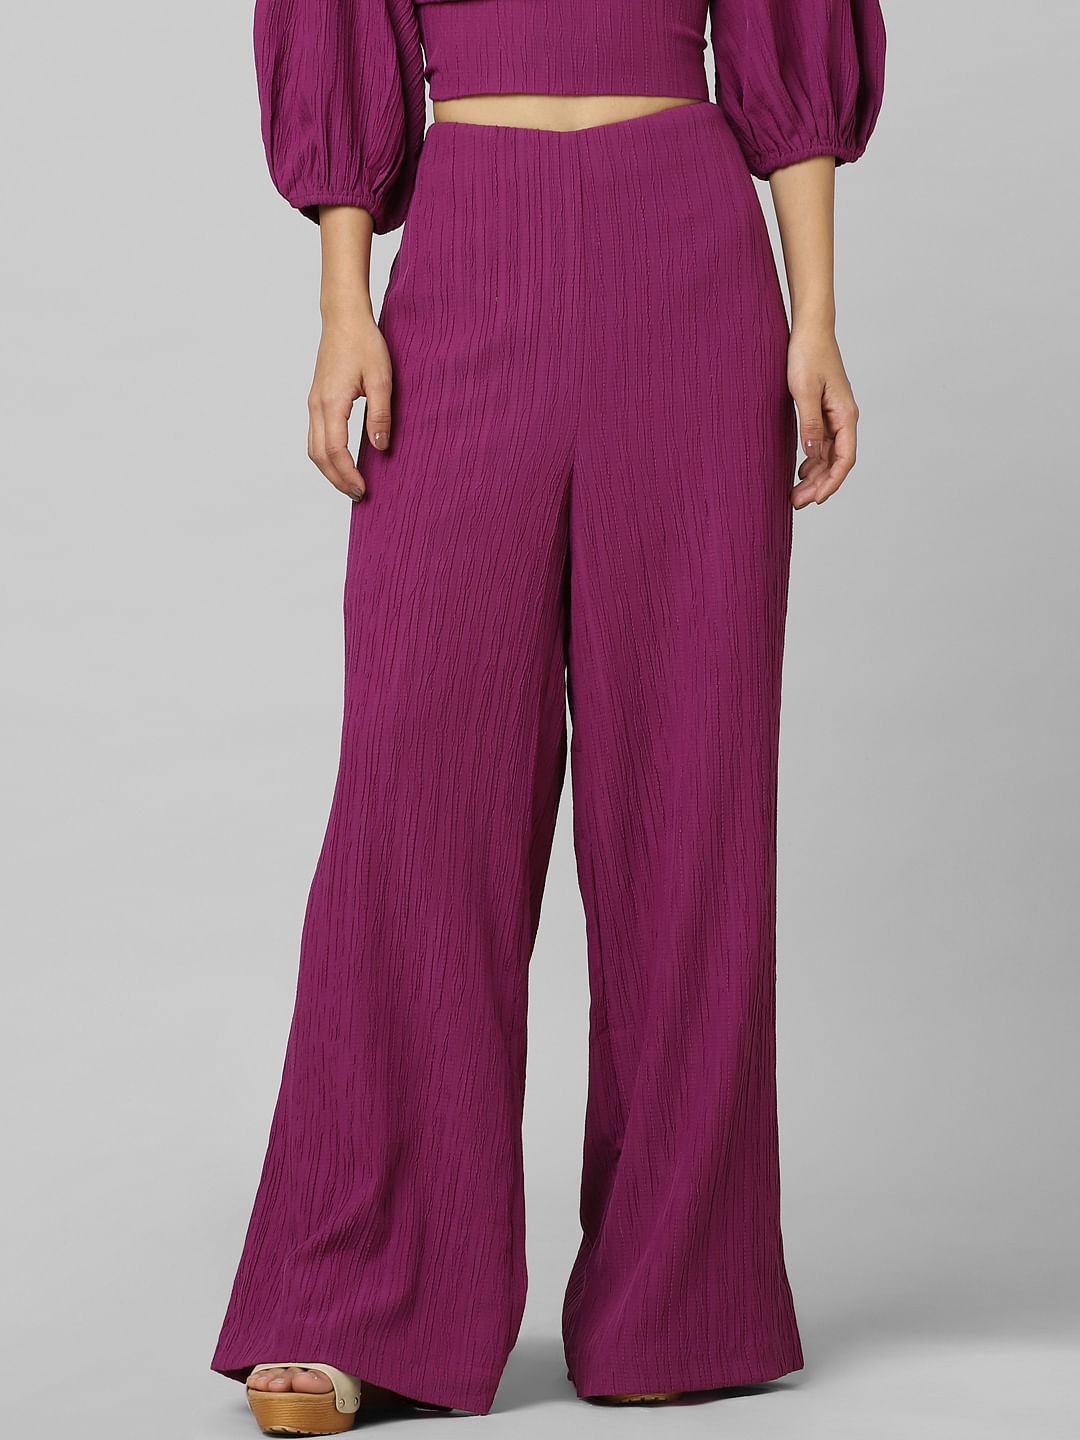 Buy Purple Trousers  Pants for Women by KOTTY Online  Ajiocom